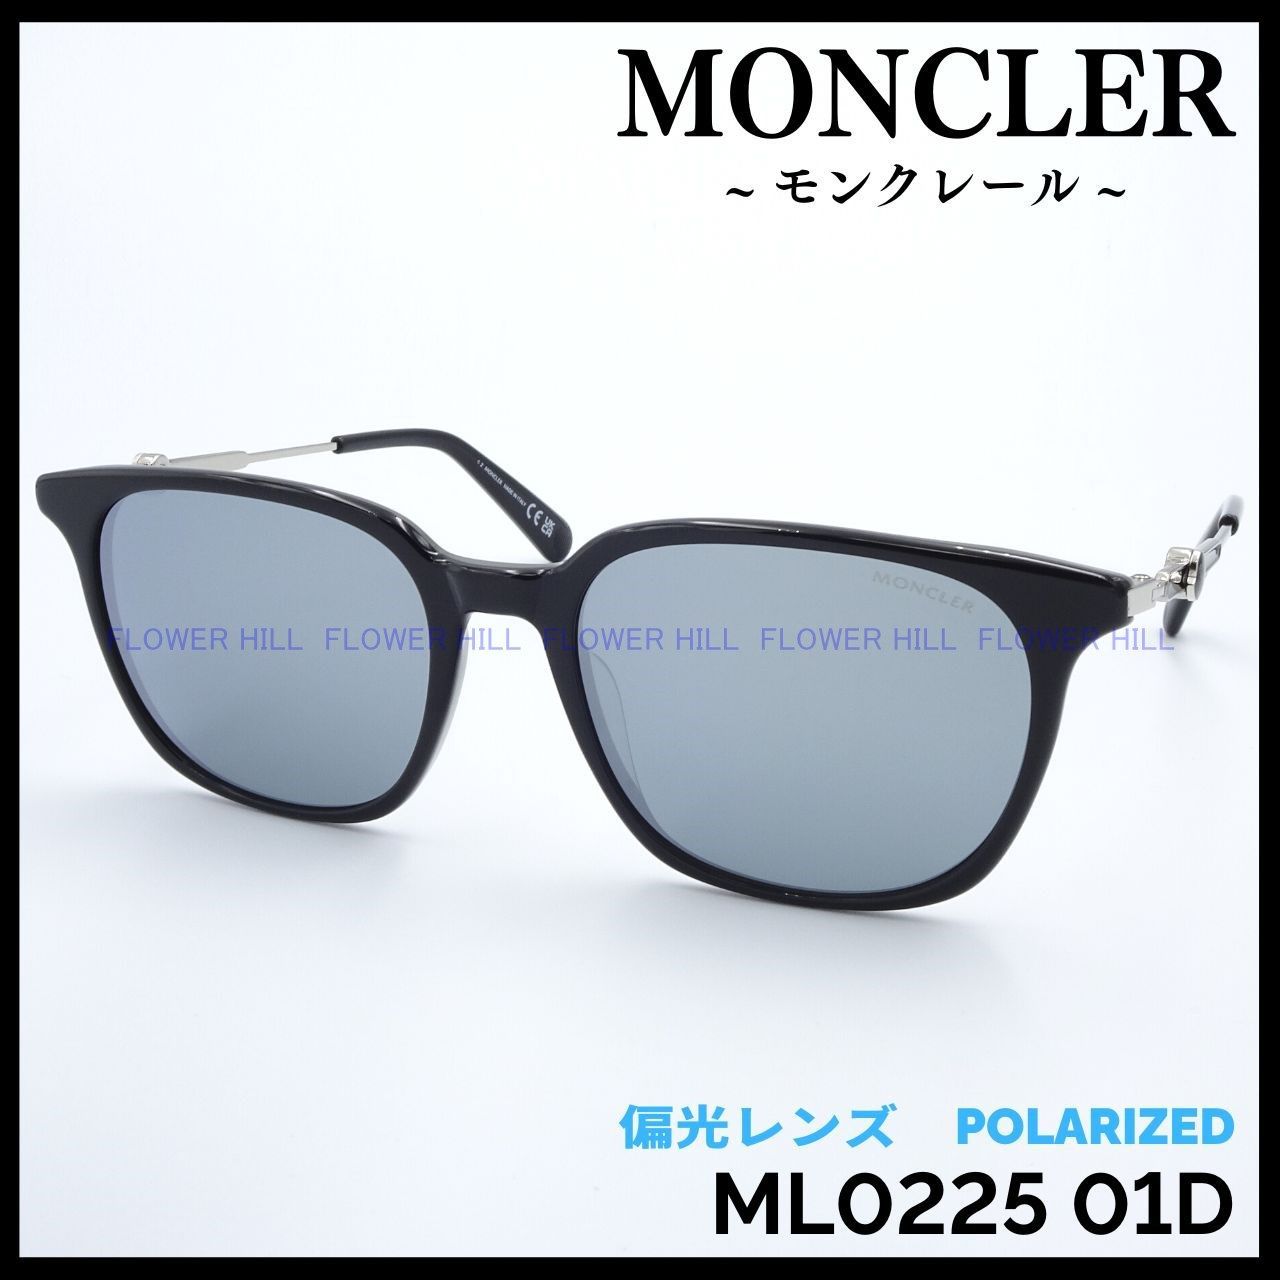 MONCLER モンクレール 偏光サングラス ML0225 01D ブラック/グレー ウェリントン イタリア製 メンズ レディース